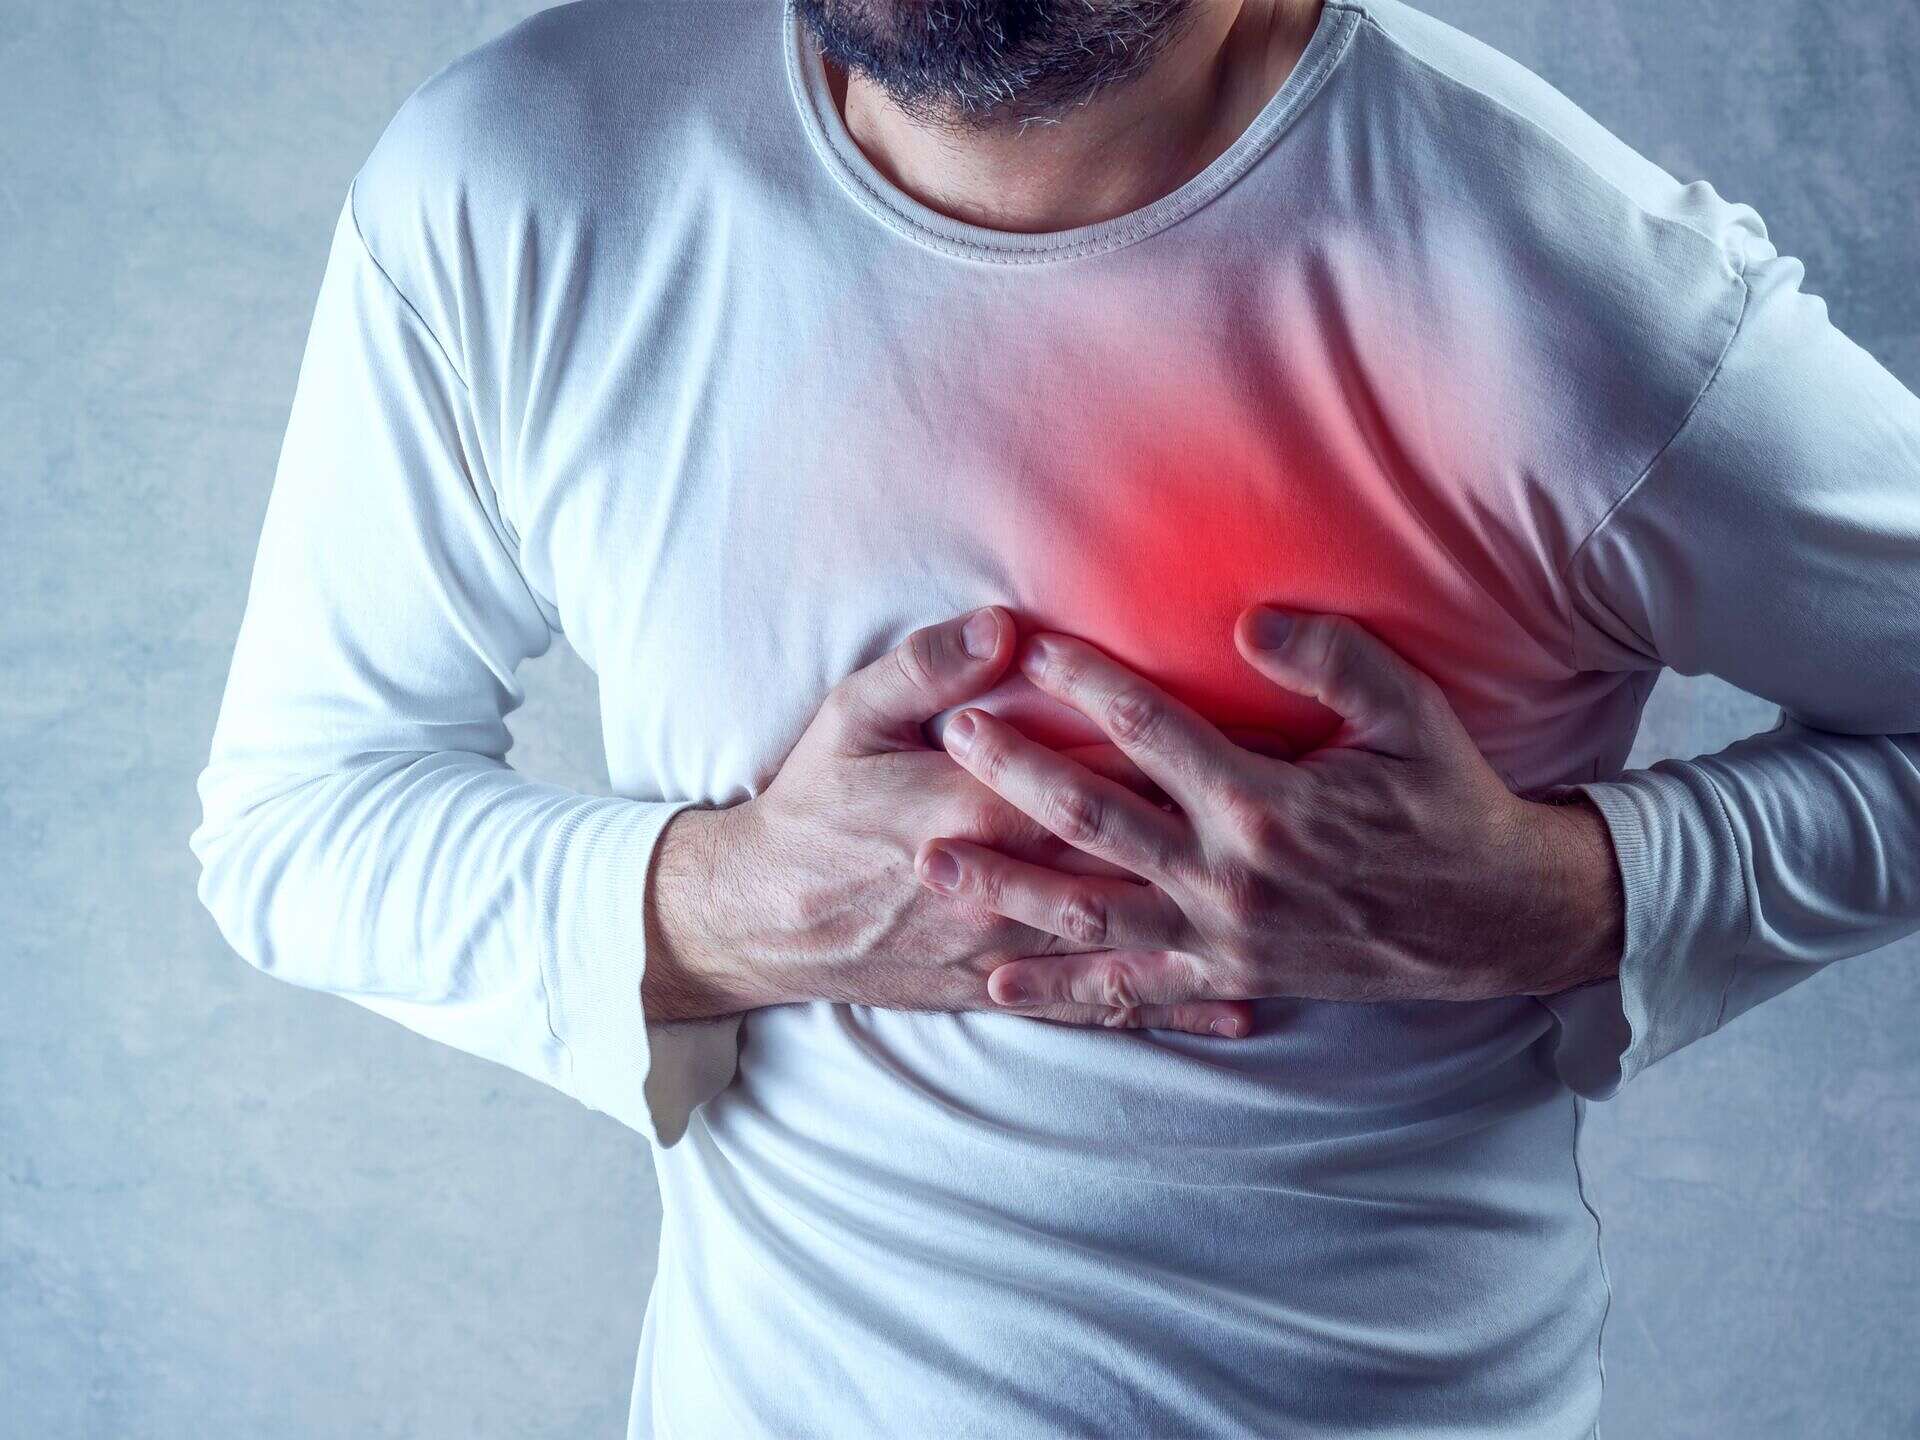 8 أعراض تحذرك من الأزمة القلبية قبل شهر من حدوثها.. إياك أن تتجاهلها